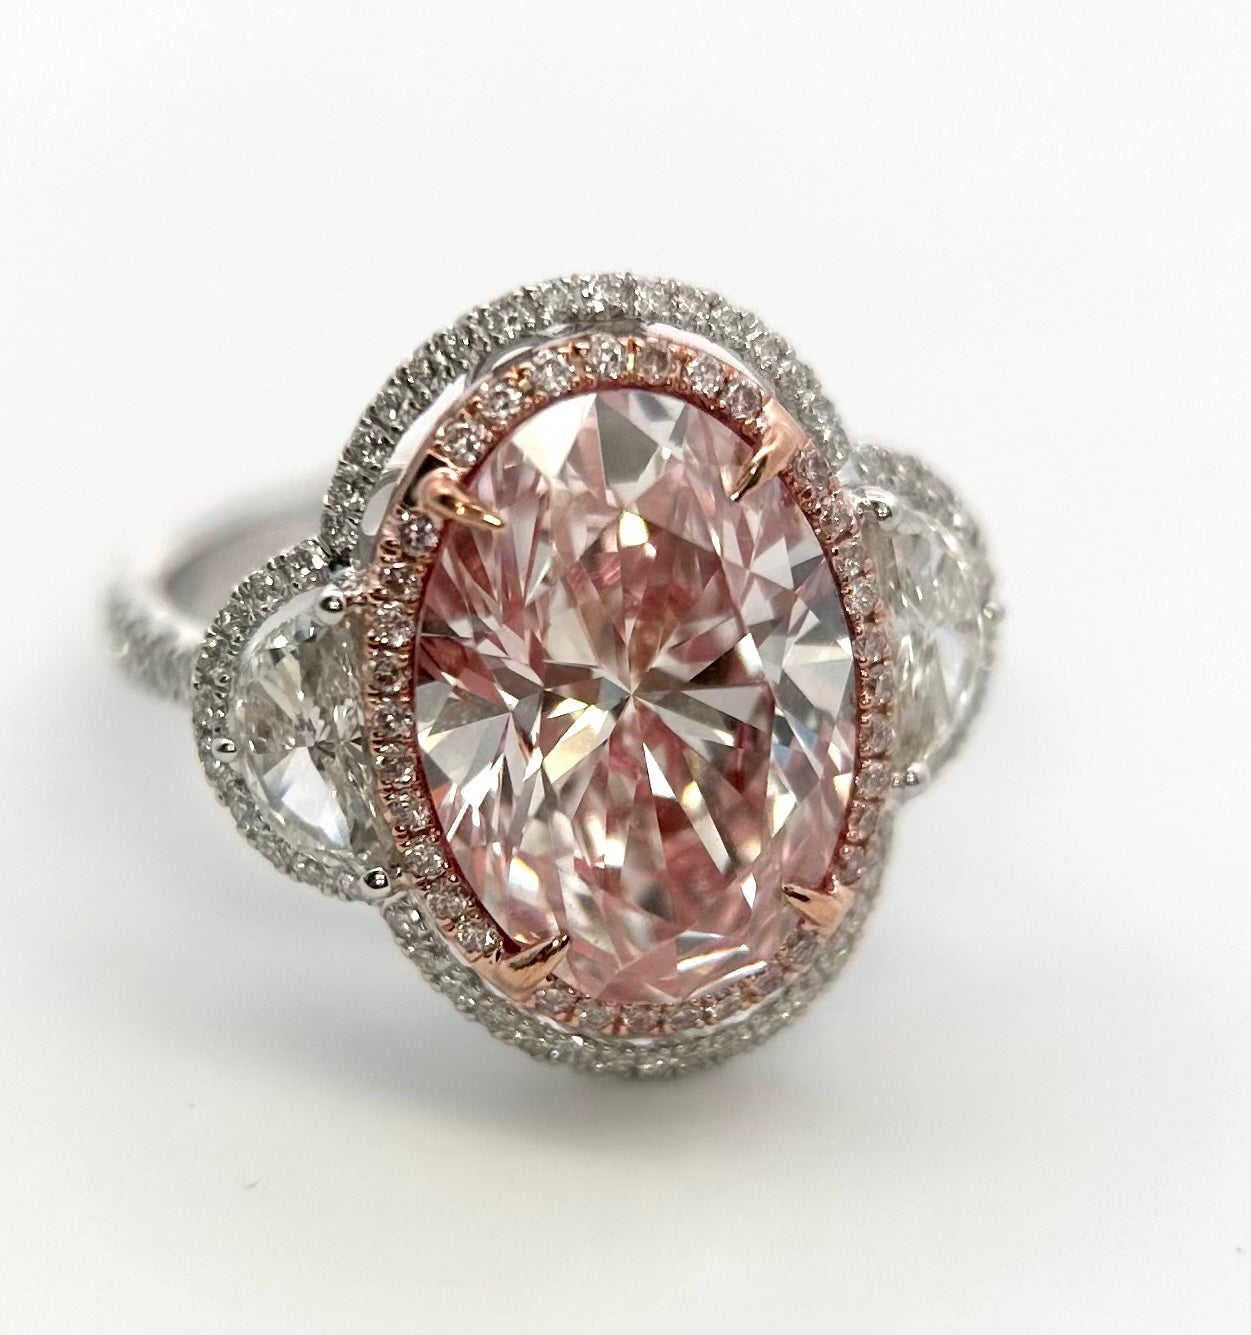 Extrêmement rare et très recherchée, la bague à trois pierres en or blanc et rose 18 carats, certifiée par le GIA de type 2a ou IIa, avec une grande taille ovale de 6,00 carats de diamant rose naturel et de diamant blanc. Il s'agit d'un diamant rose